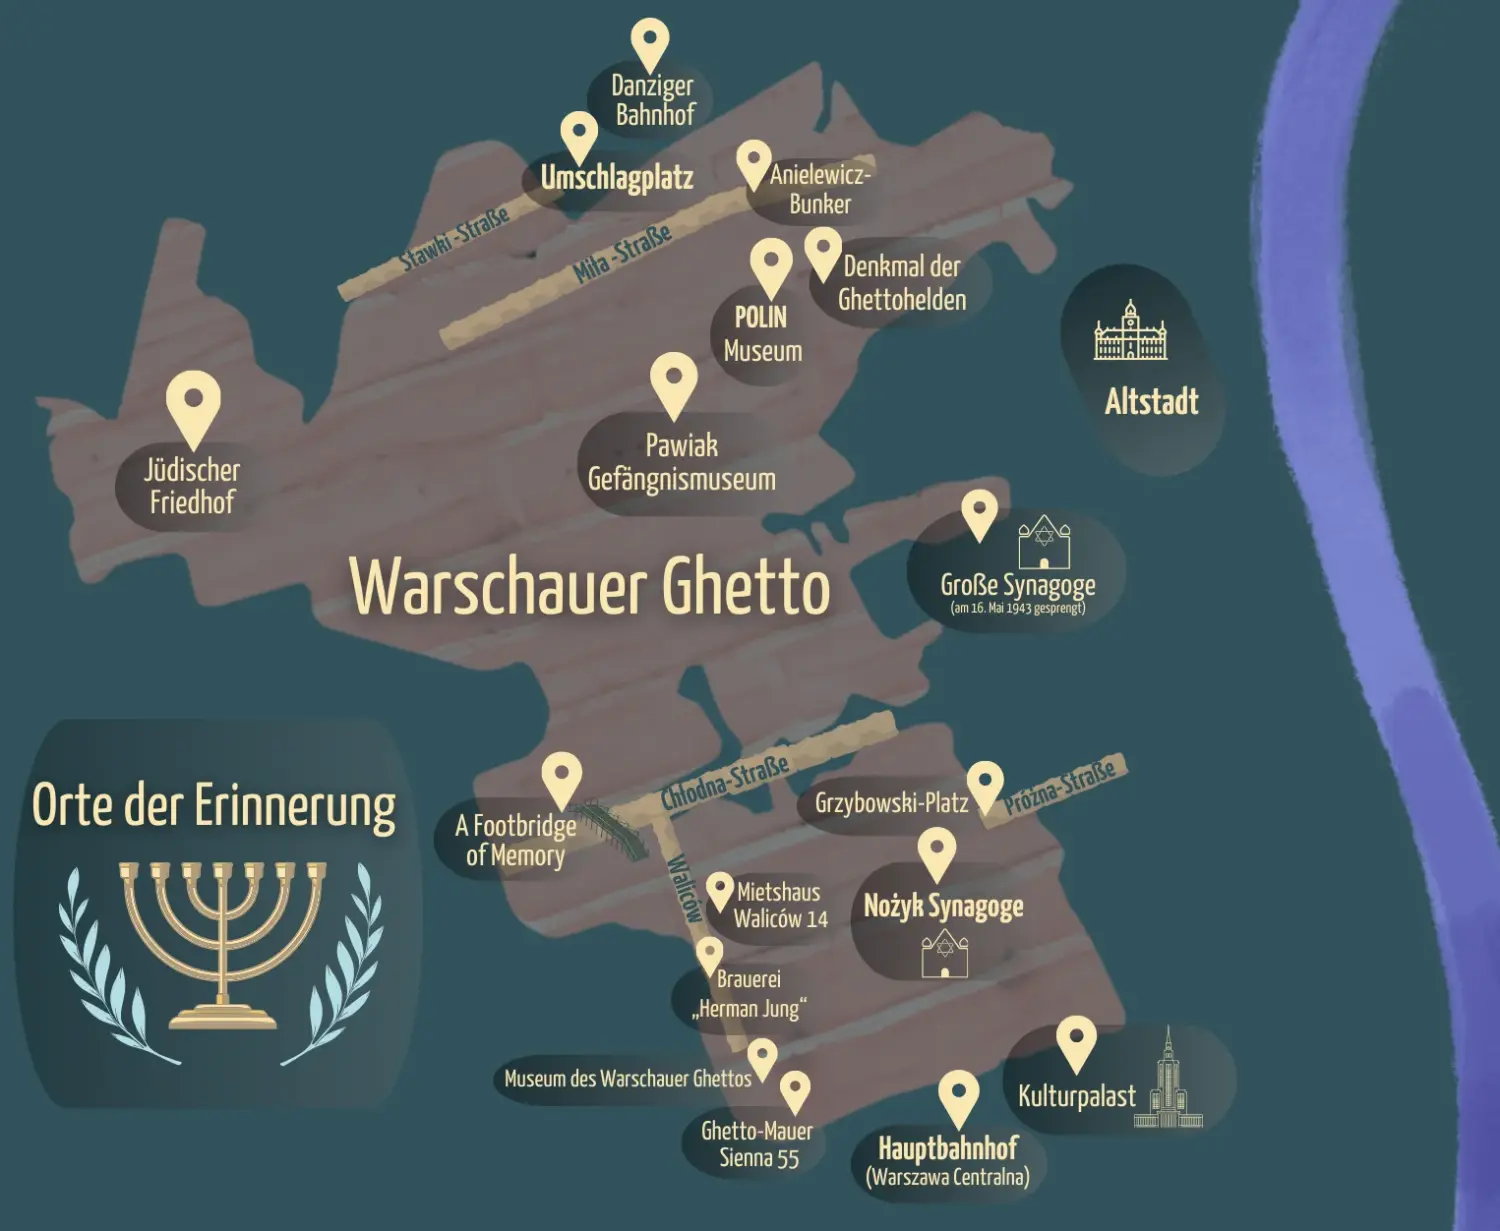 Warschauer Ghetto Karte mit Umriss. 
Landmarken markieren Orte der Erinnerung. Stawki Straße, Mila-Straße,Chlodna-Straße, Walicow und Prozna sind eingezeichnet.